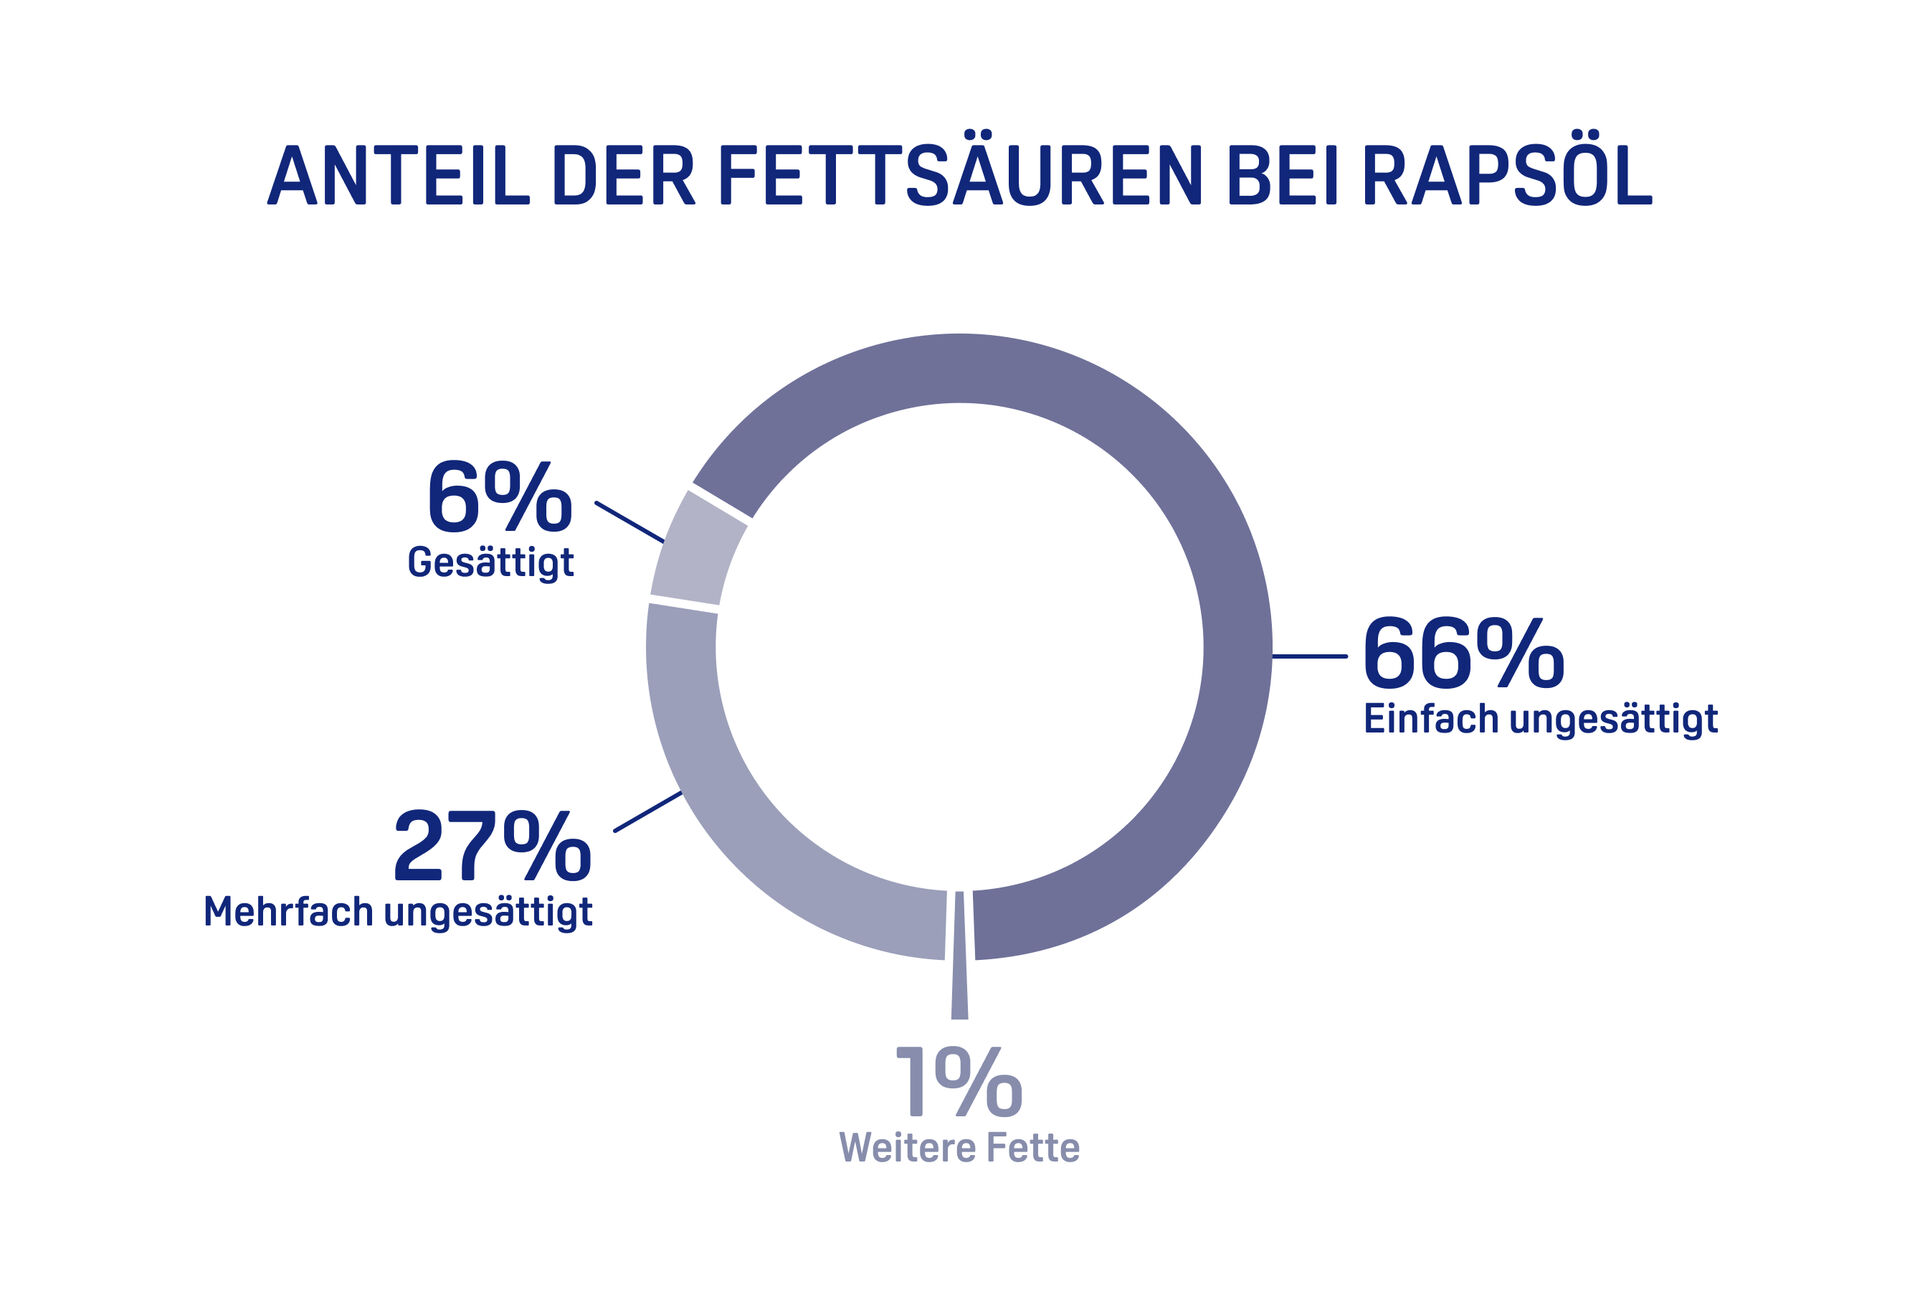 Infografik zeigt Anteil der Fettsäuren bei Rapsöl